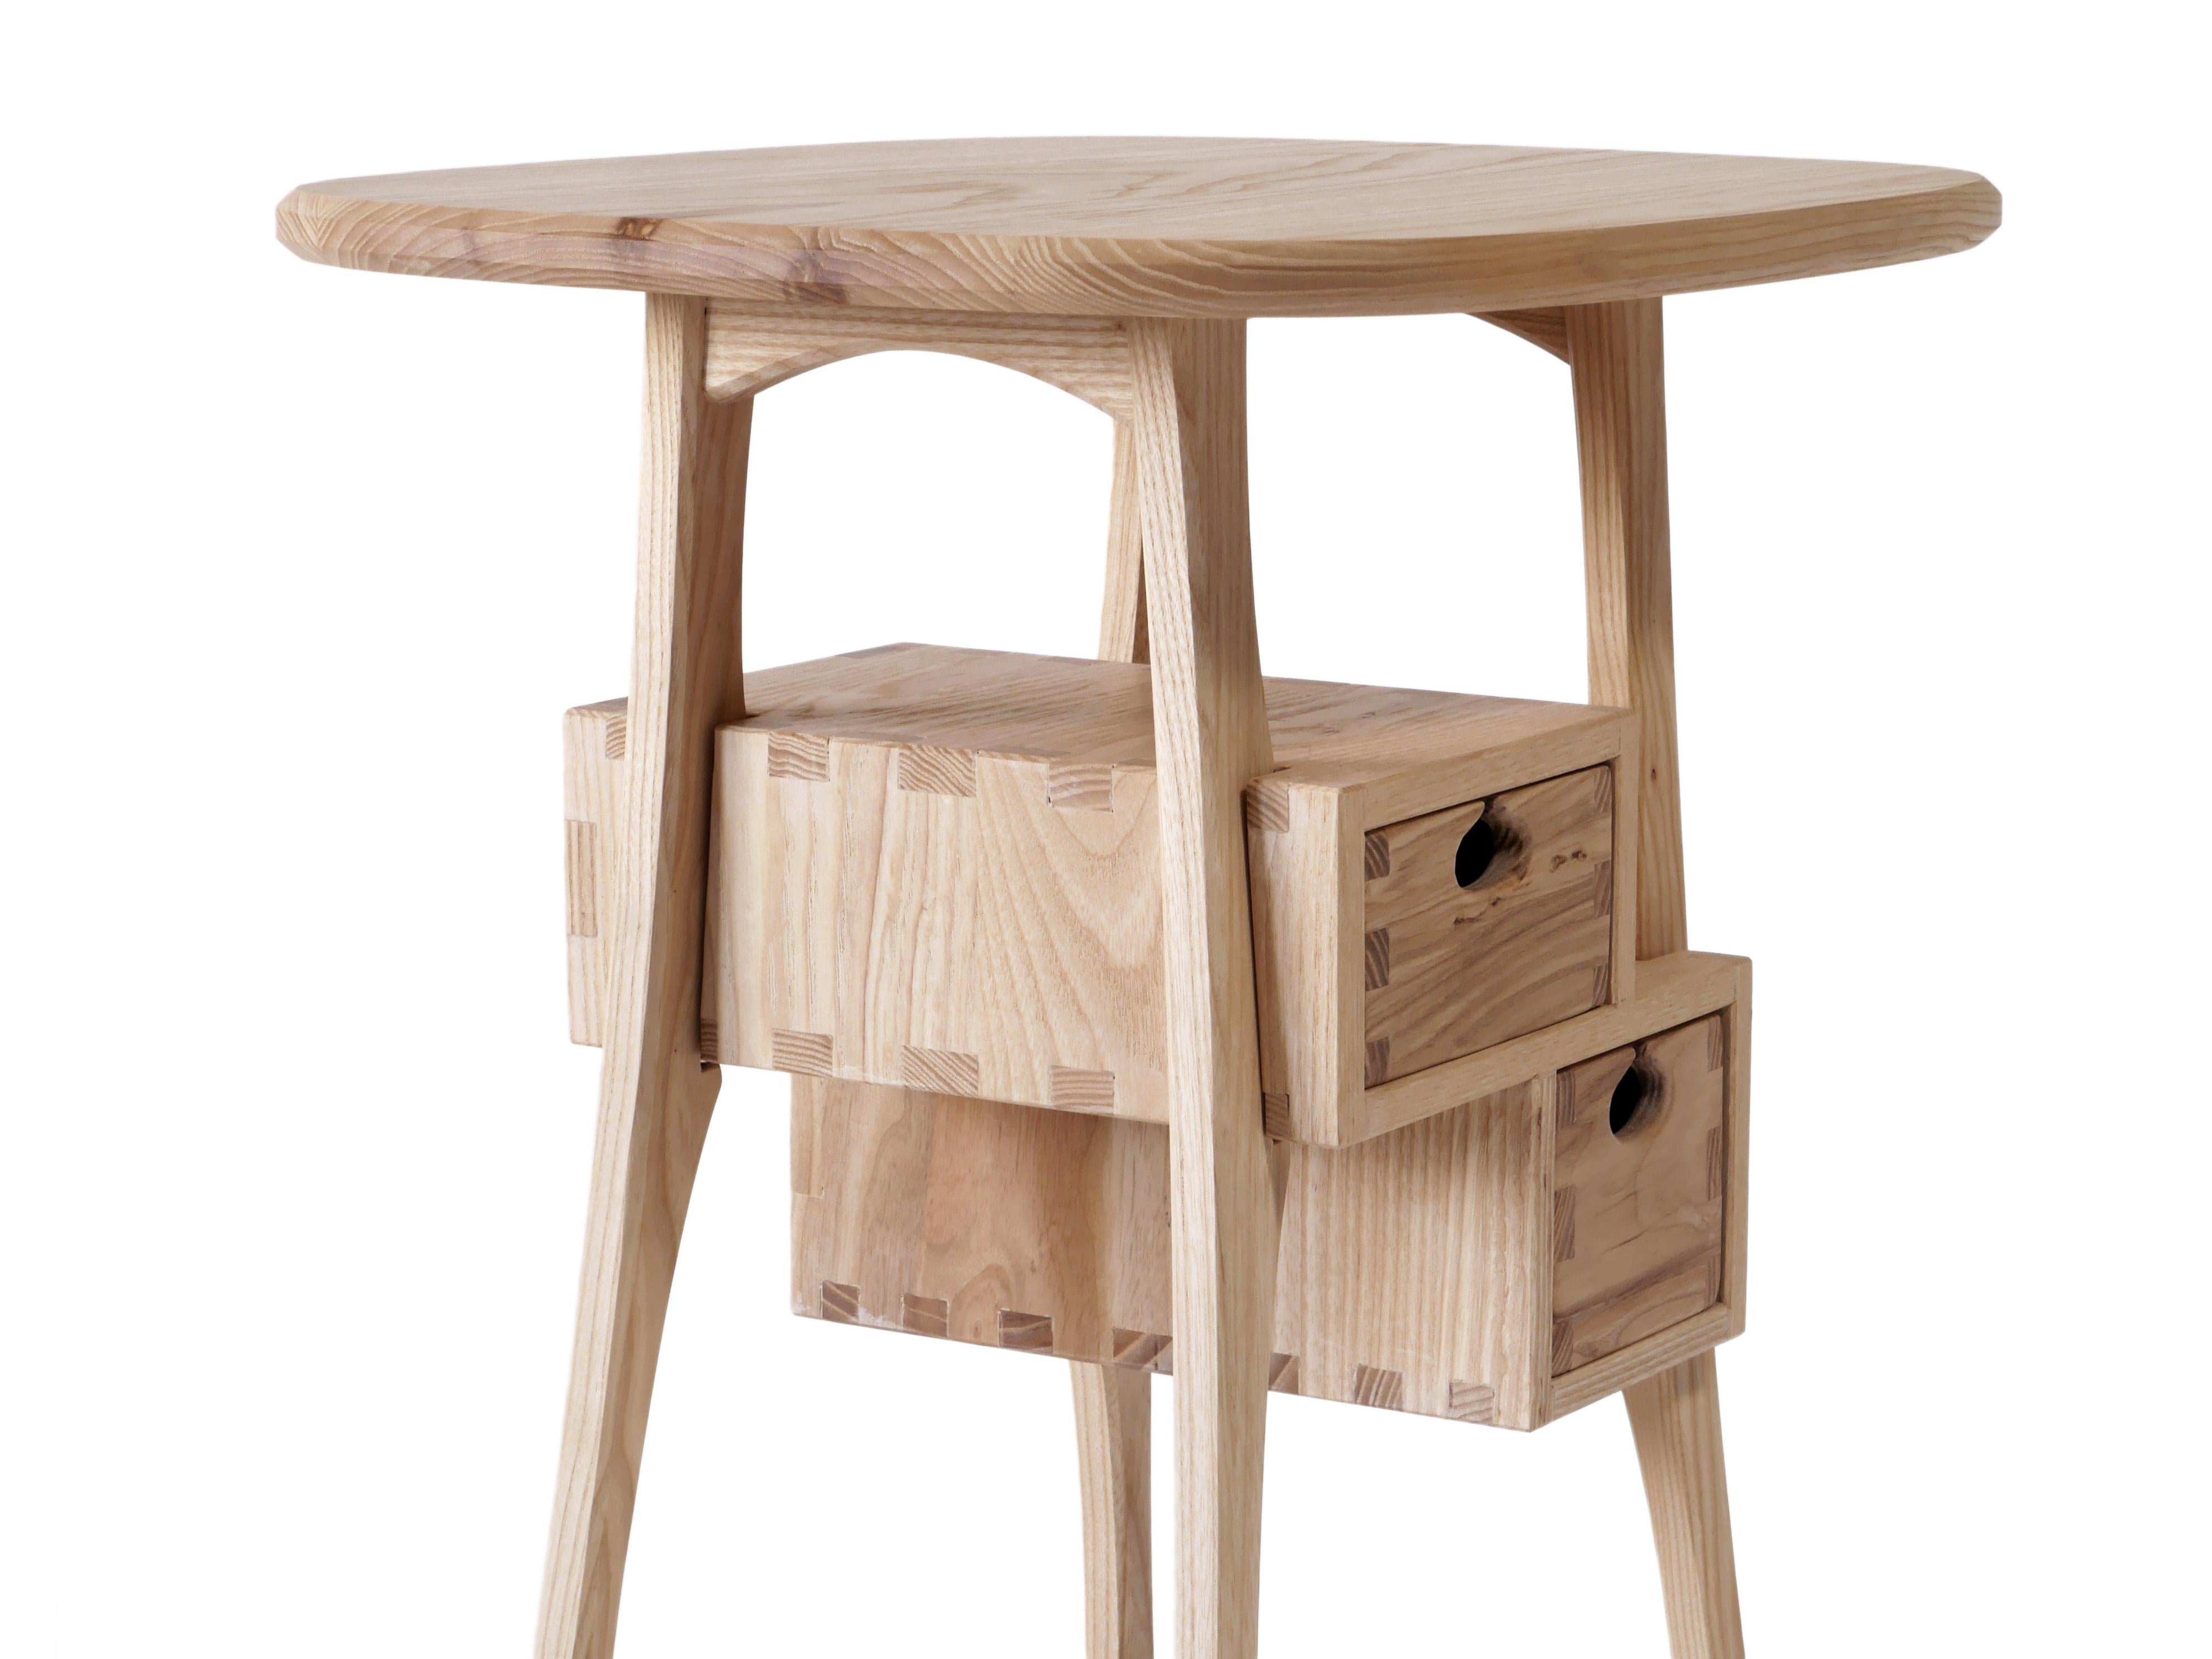 La table d'appoint Haar, très ludique, est fabriquée en frêne blanc massif et comporte deux tiroirs montés sur des glissières en bois dans des boîtes à tiroirs traditionnelles. Il est construit avec des menuiseries apparentes qui ont été